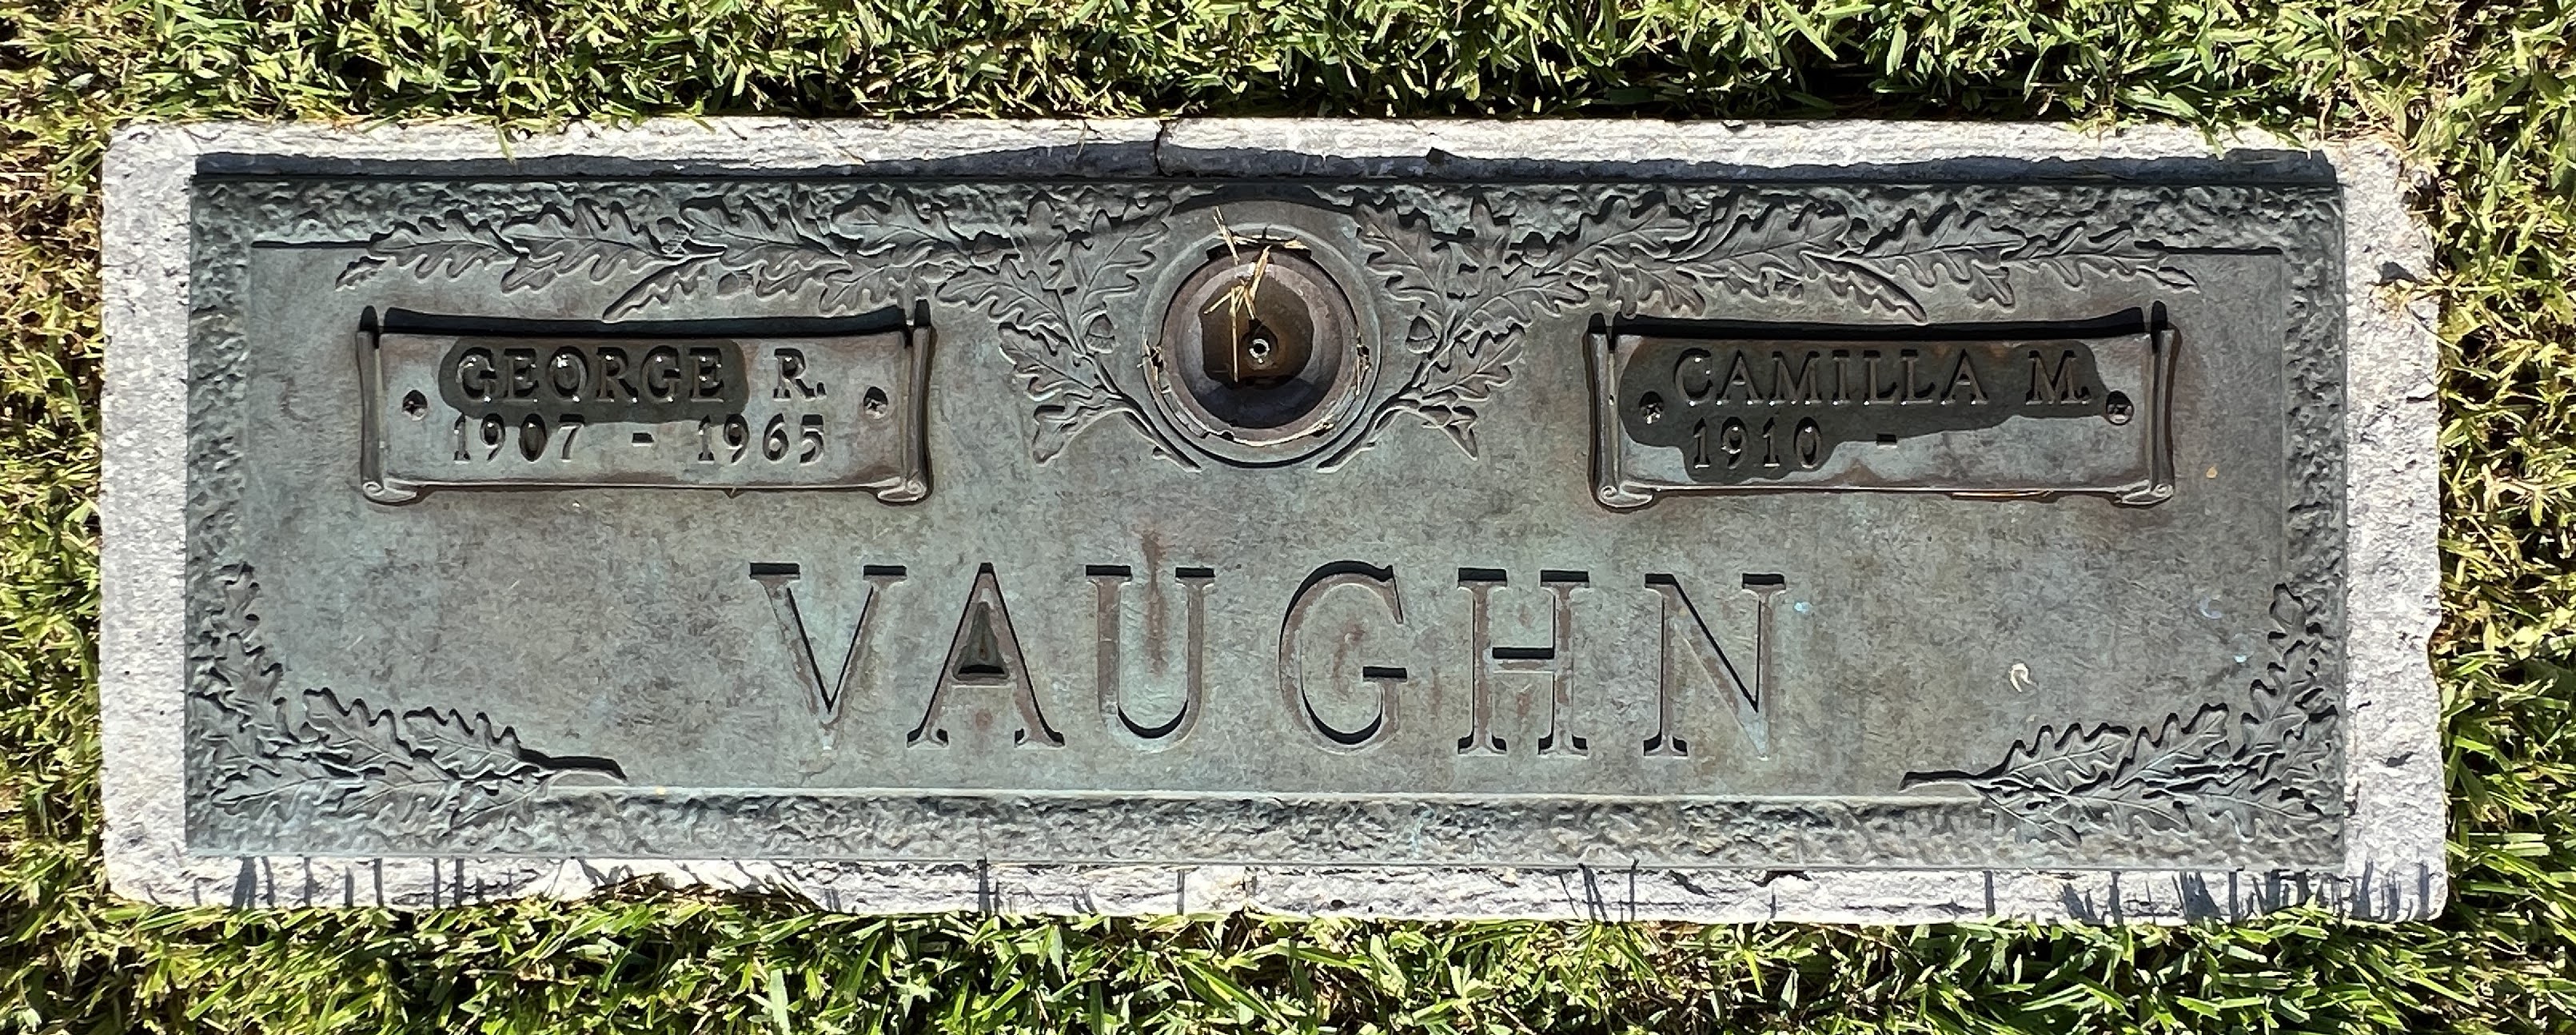 George R Vaughn